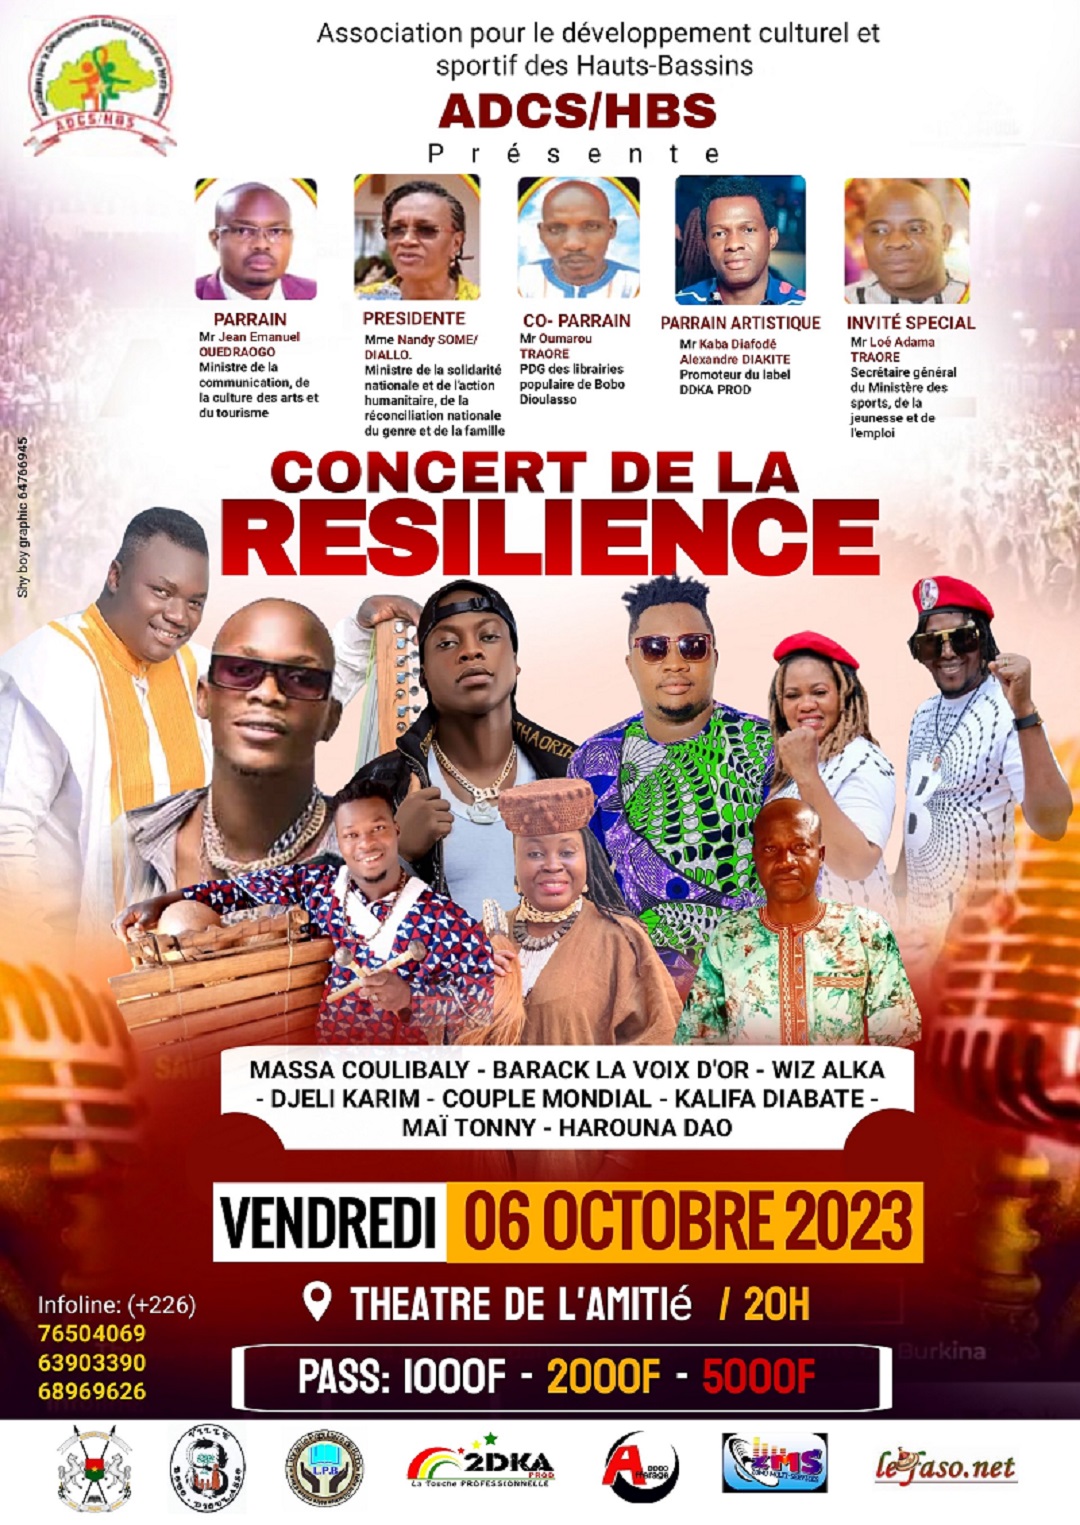 Concert de la résilience le vendredi 6 octobre 2023 au théâtre de l’amitié de Bobo-Dioulasso